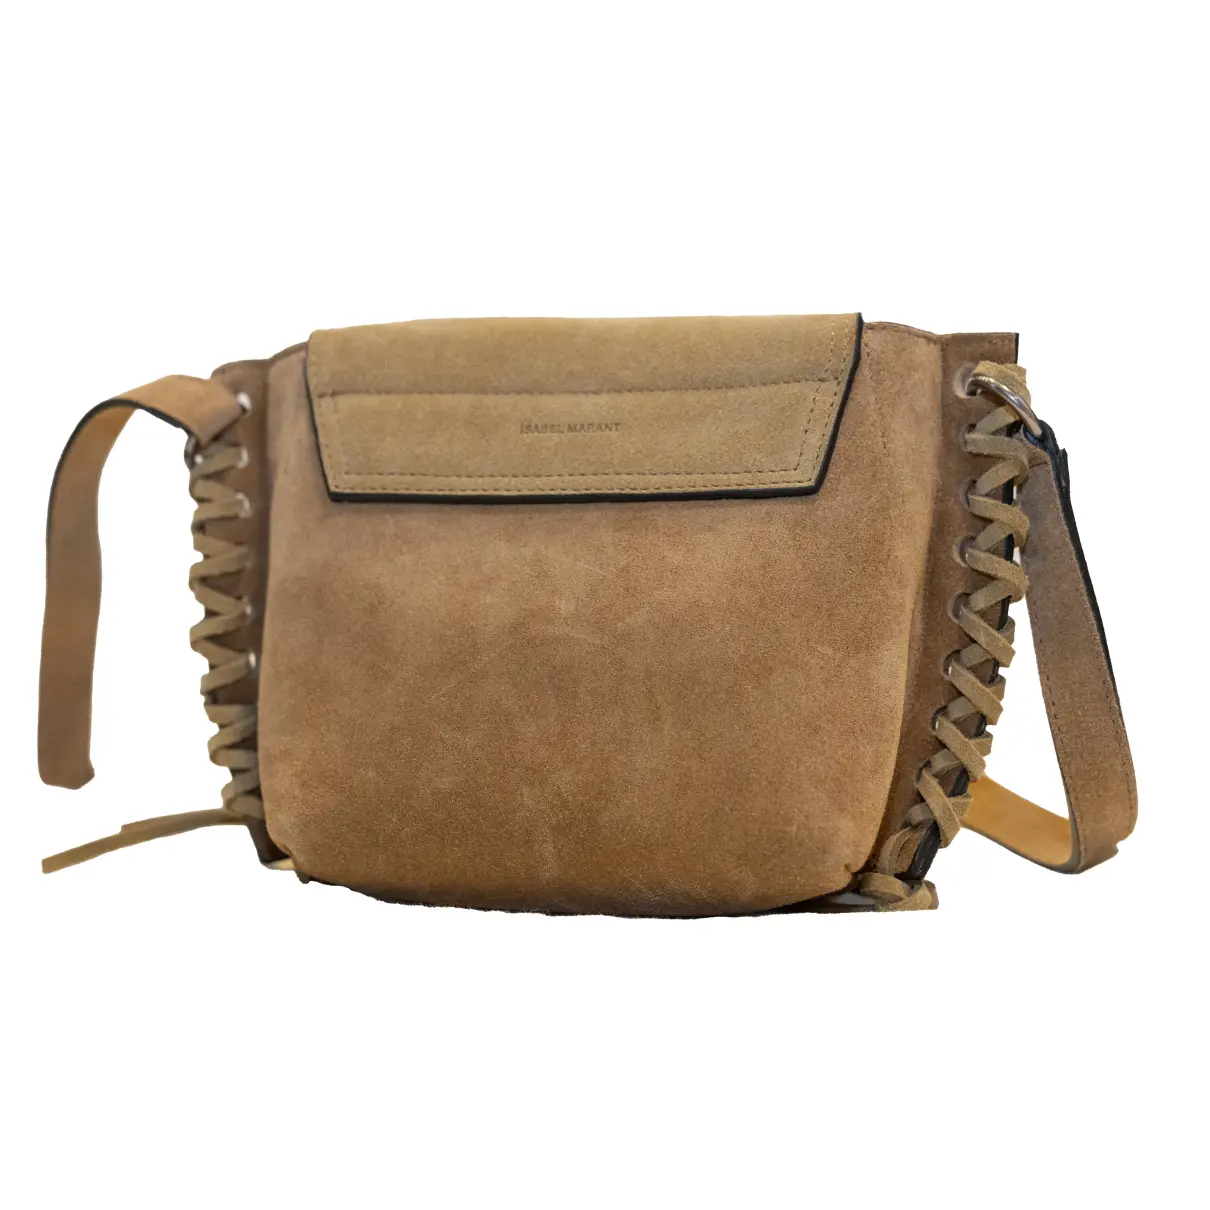 Buy Isabel Marant Handbag online